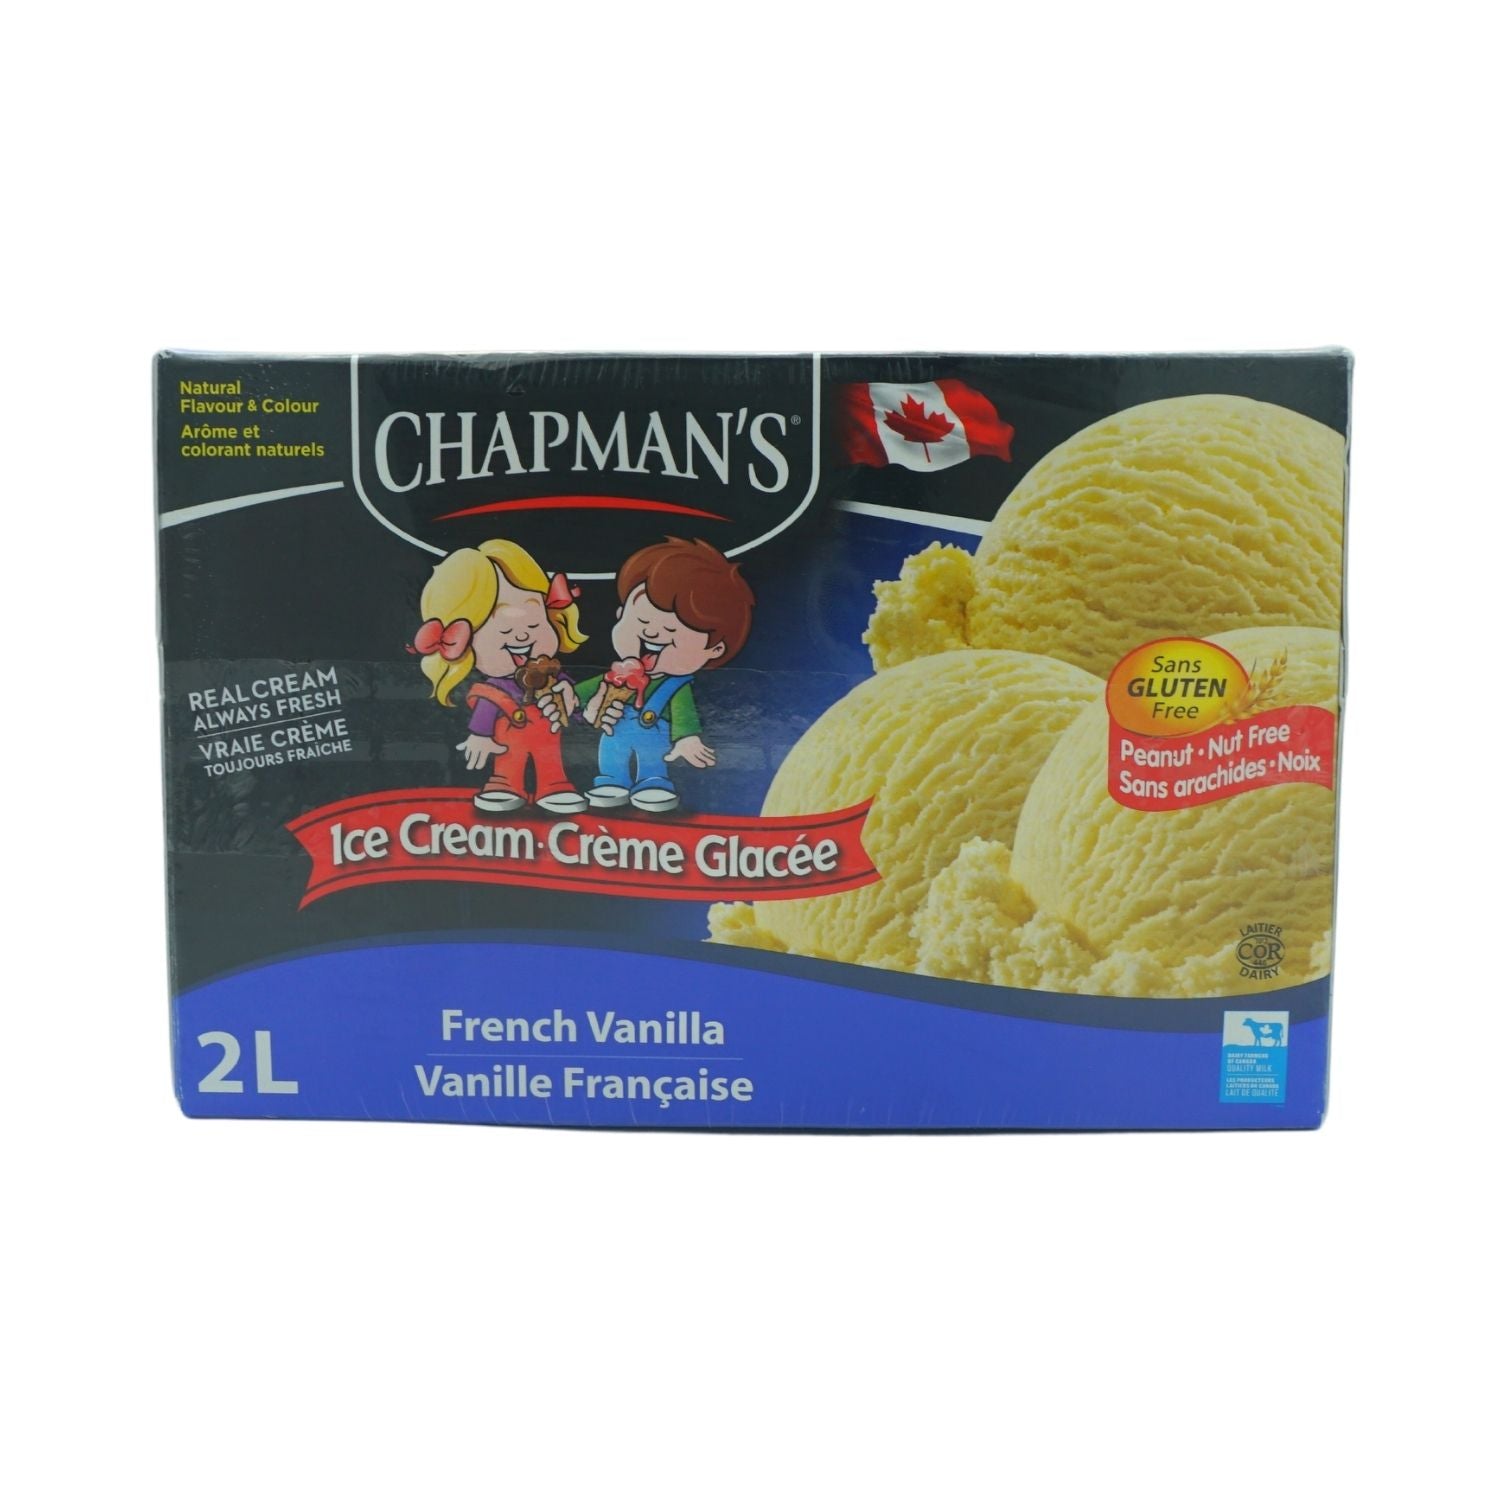 Crème Glacée Napolitaine - 11.4 Litres - Chapman's